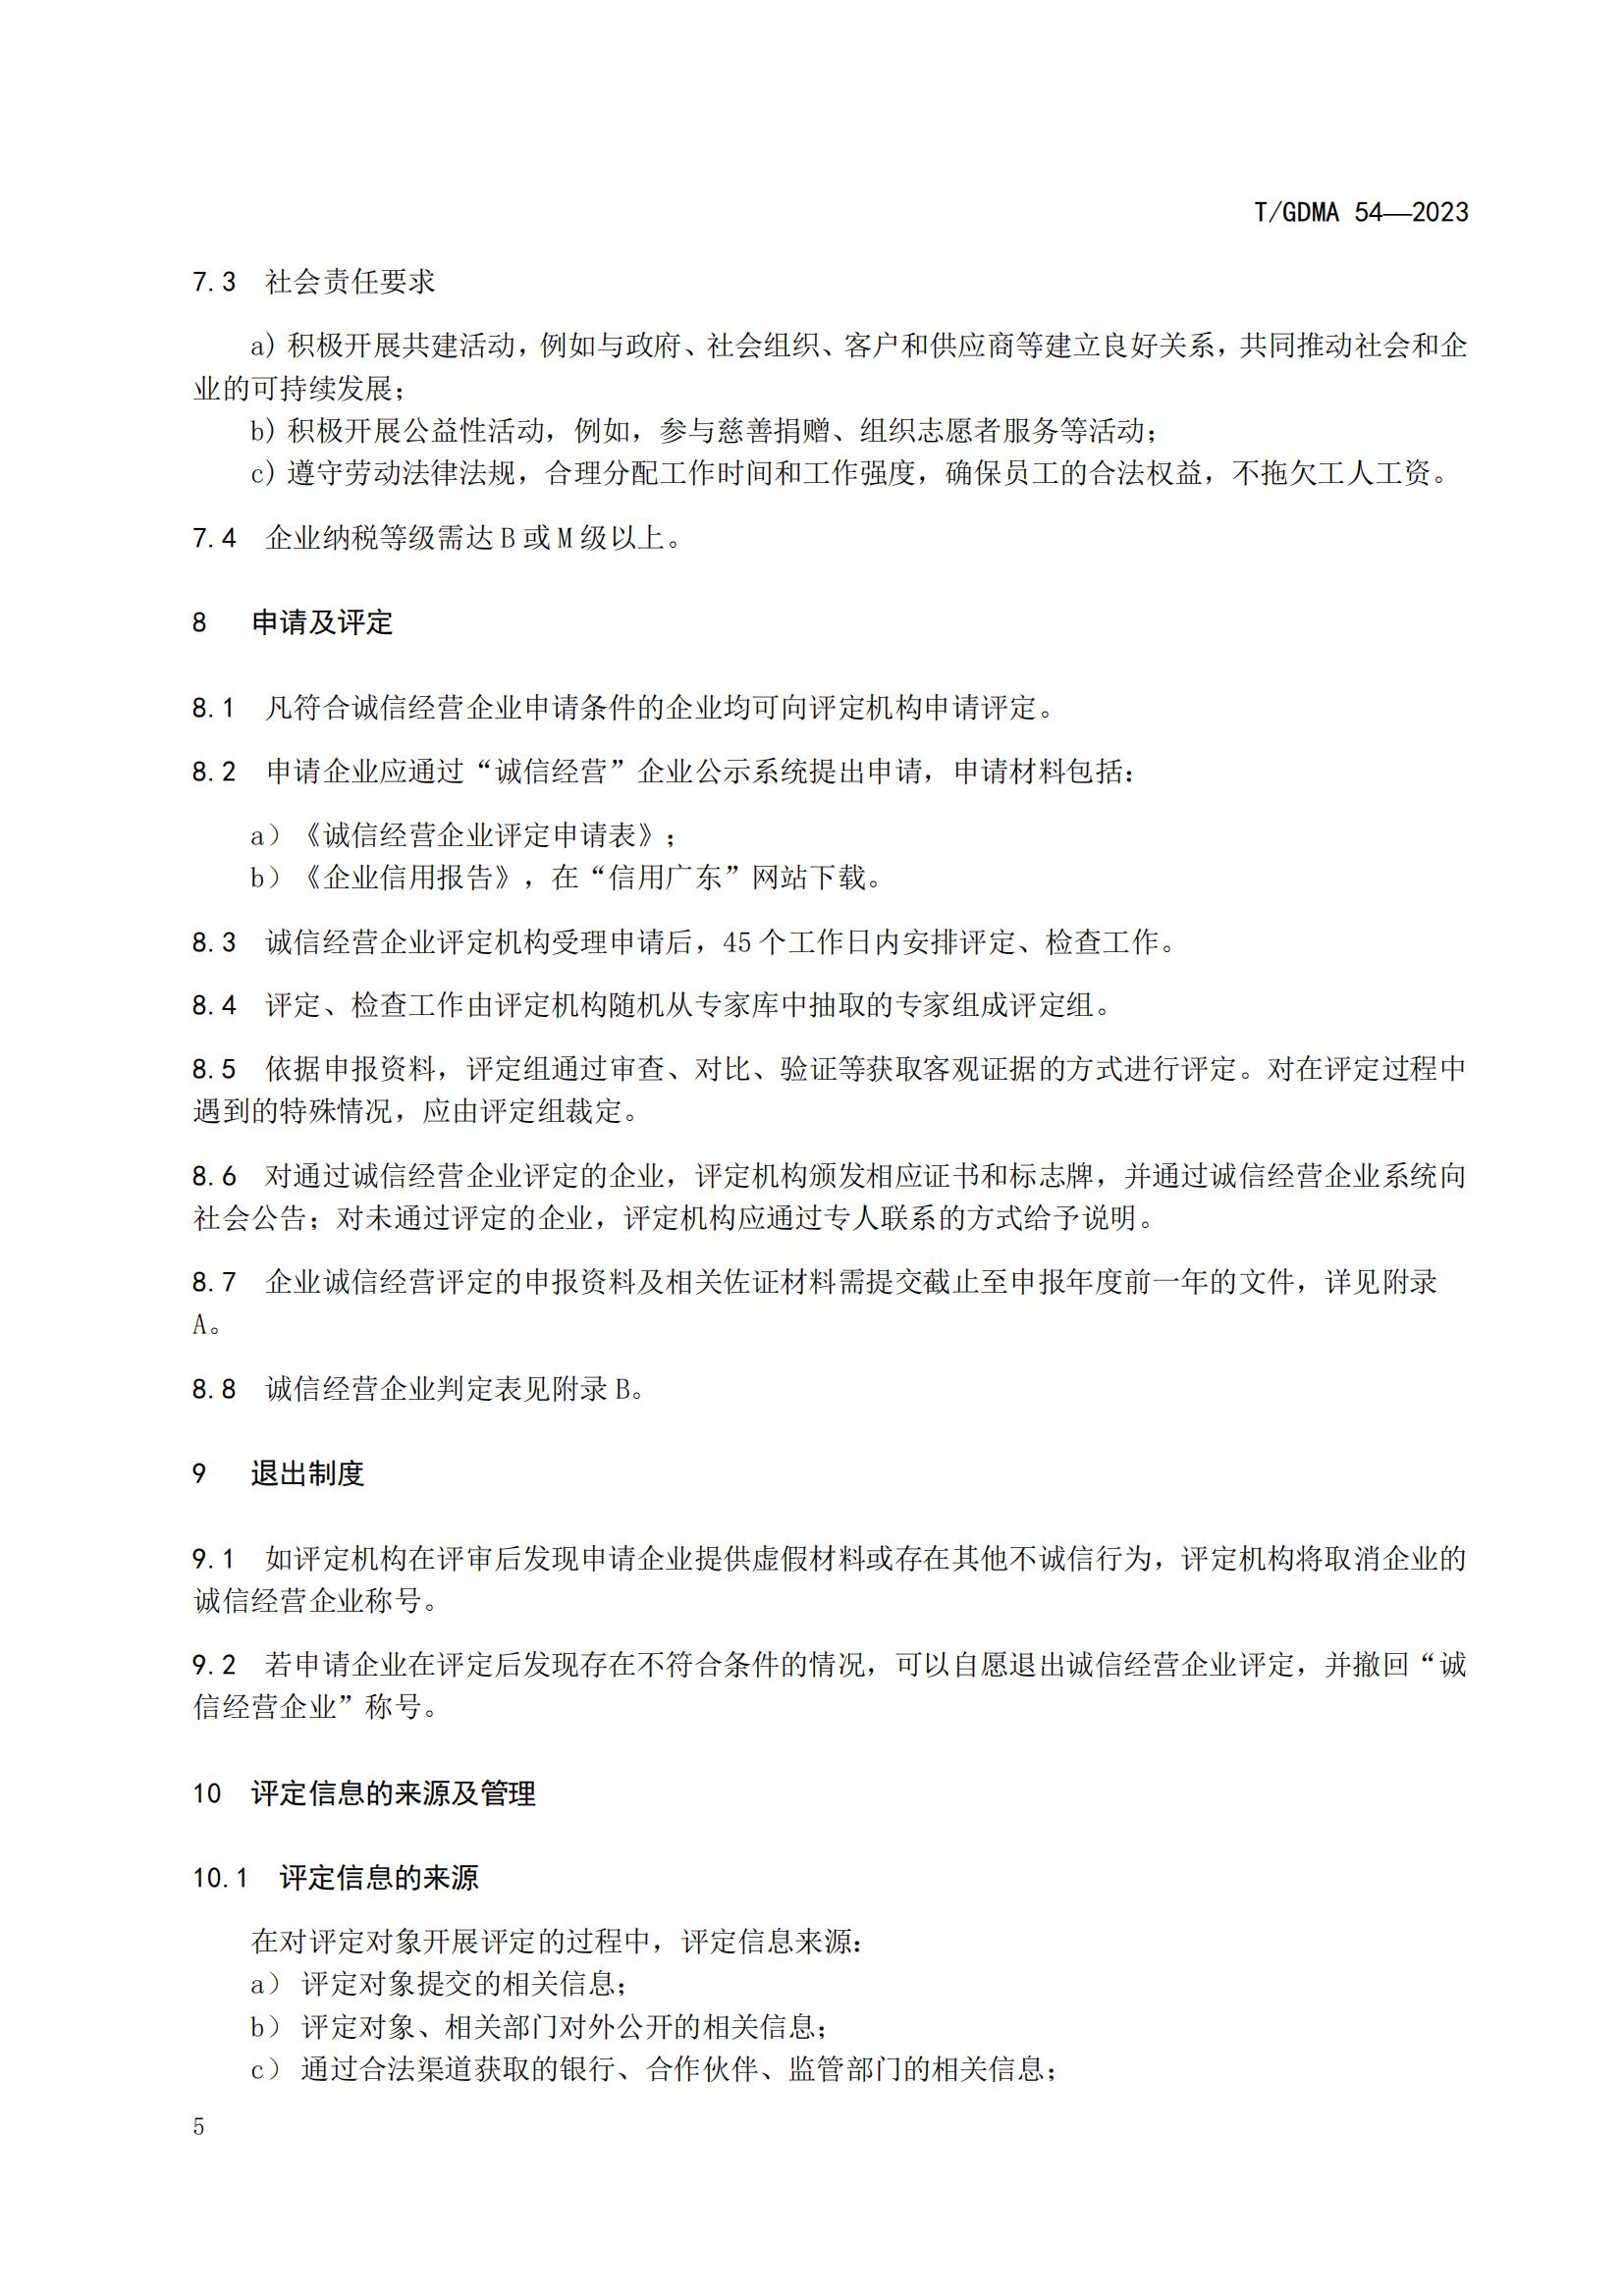 20230427 广东省诚信经营企业评定规范意见（发布稿）(1)(1)_05.jpg